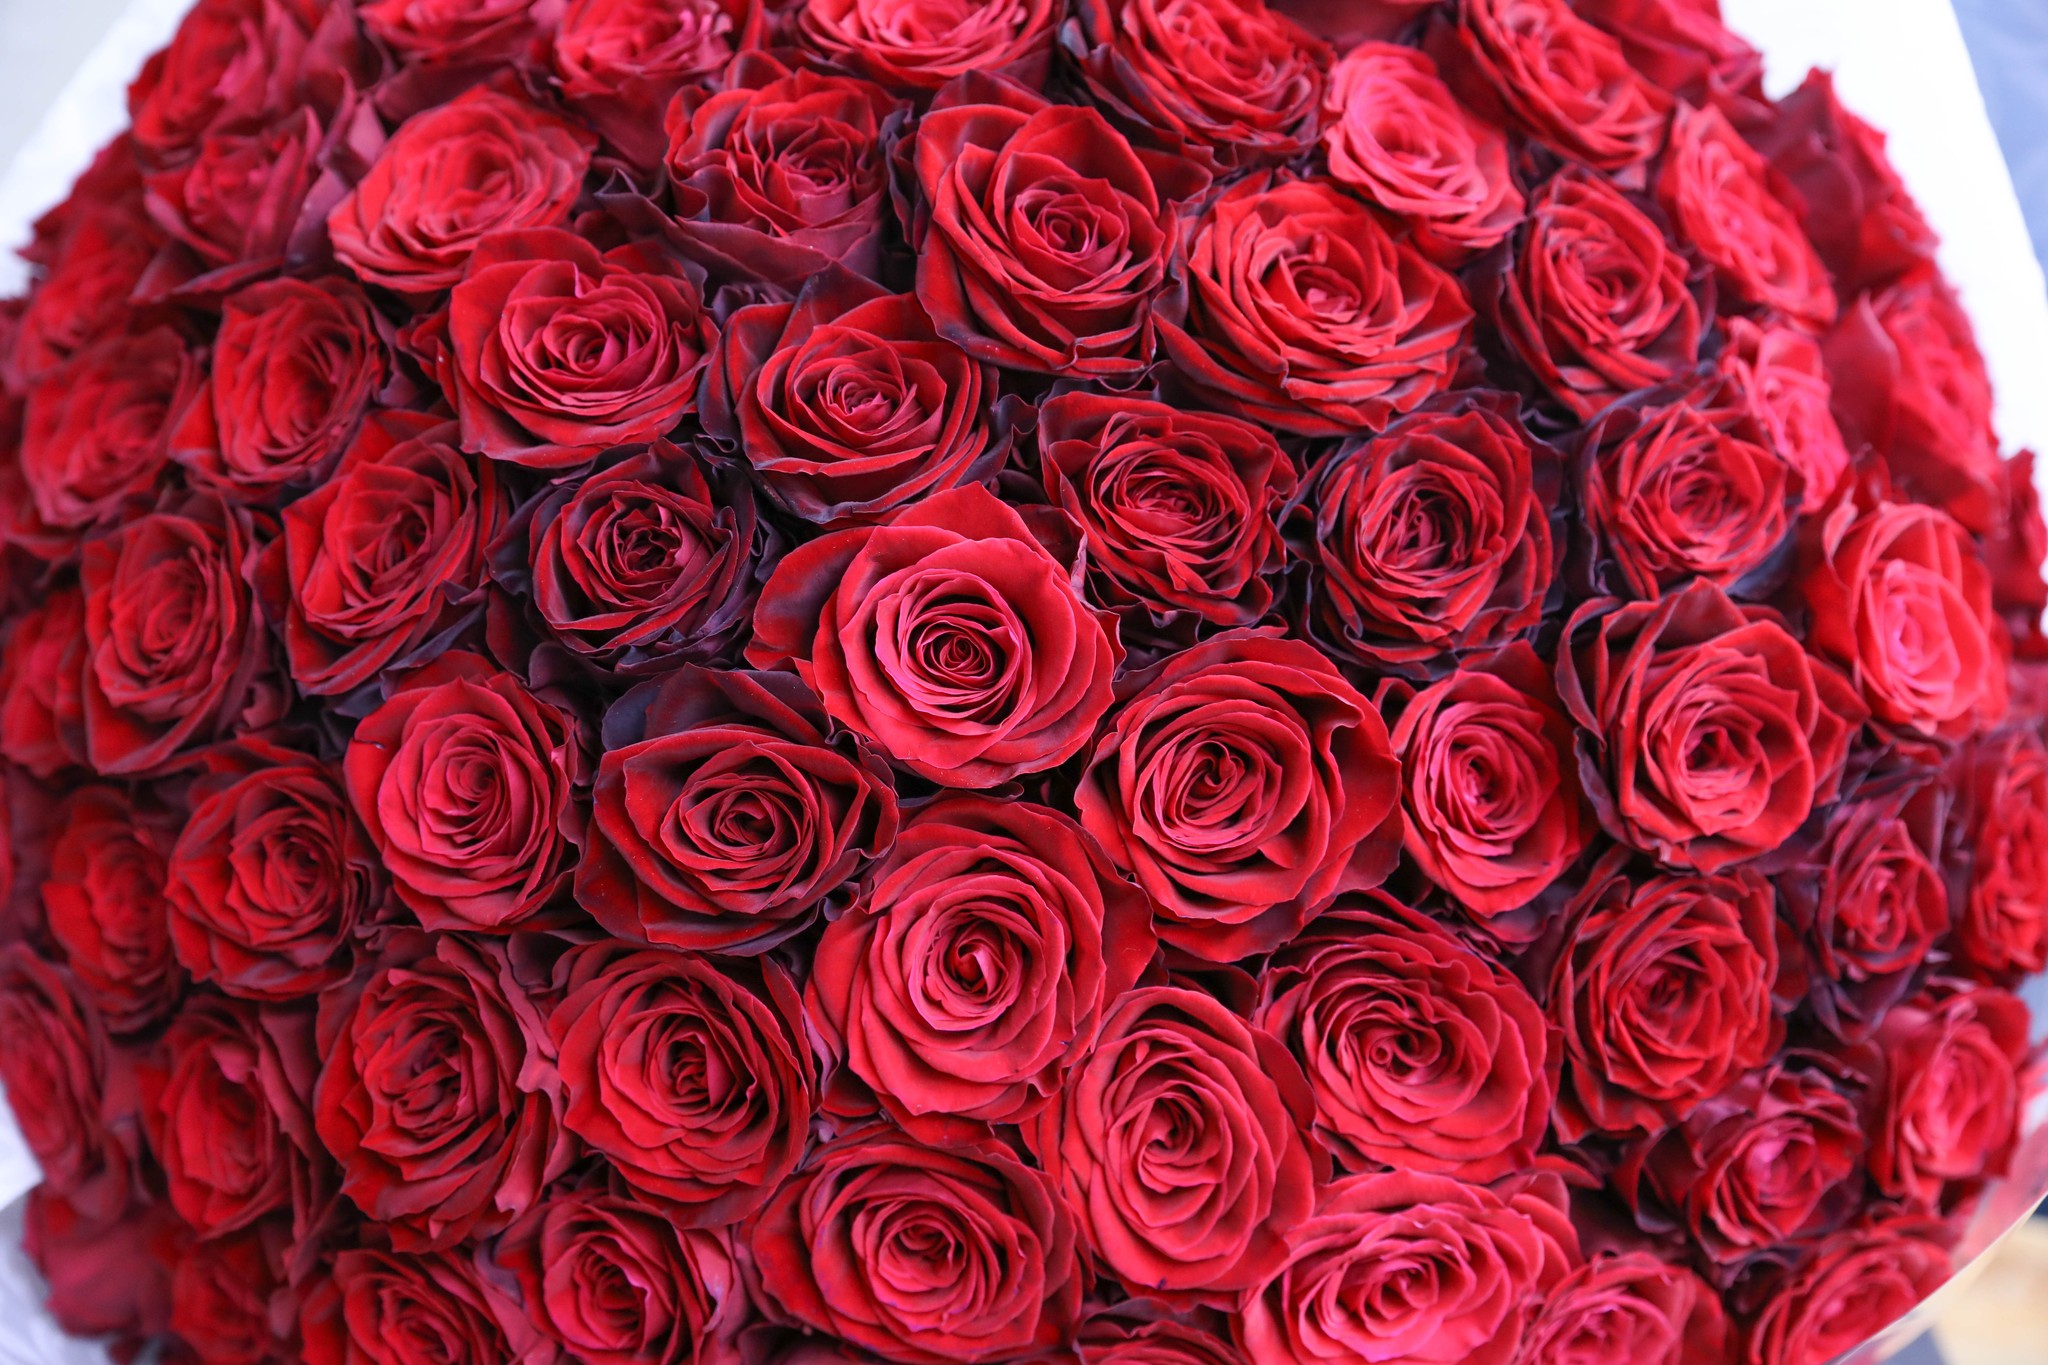 プロポーズに贈るバラ100本の花束 制作動画 2020 03 14撮影 100本のバラ専門店